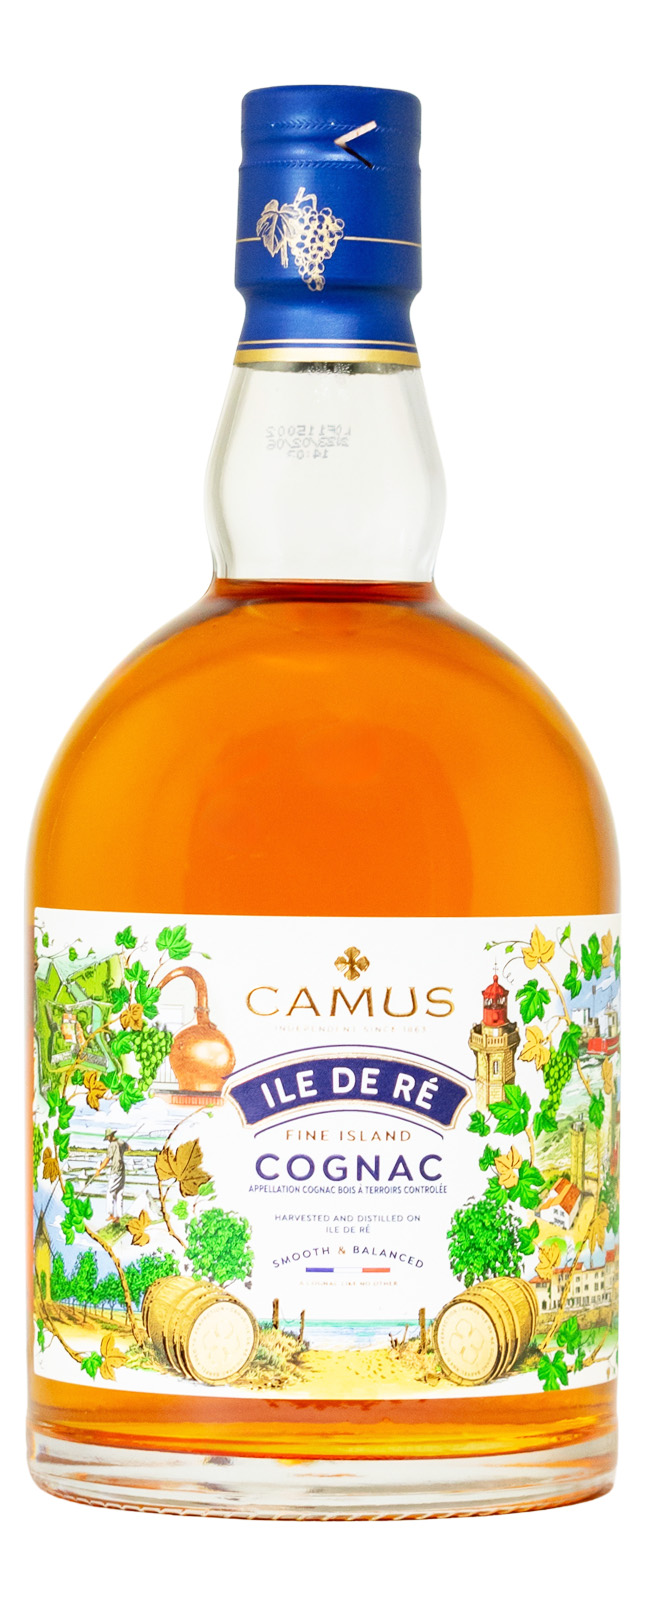 Camus Ile de Re Fine Island Cognac - 0,7L 40% vol